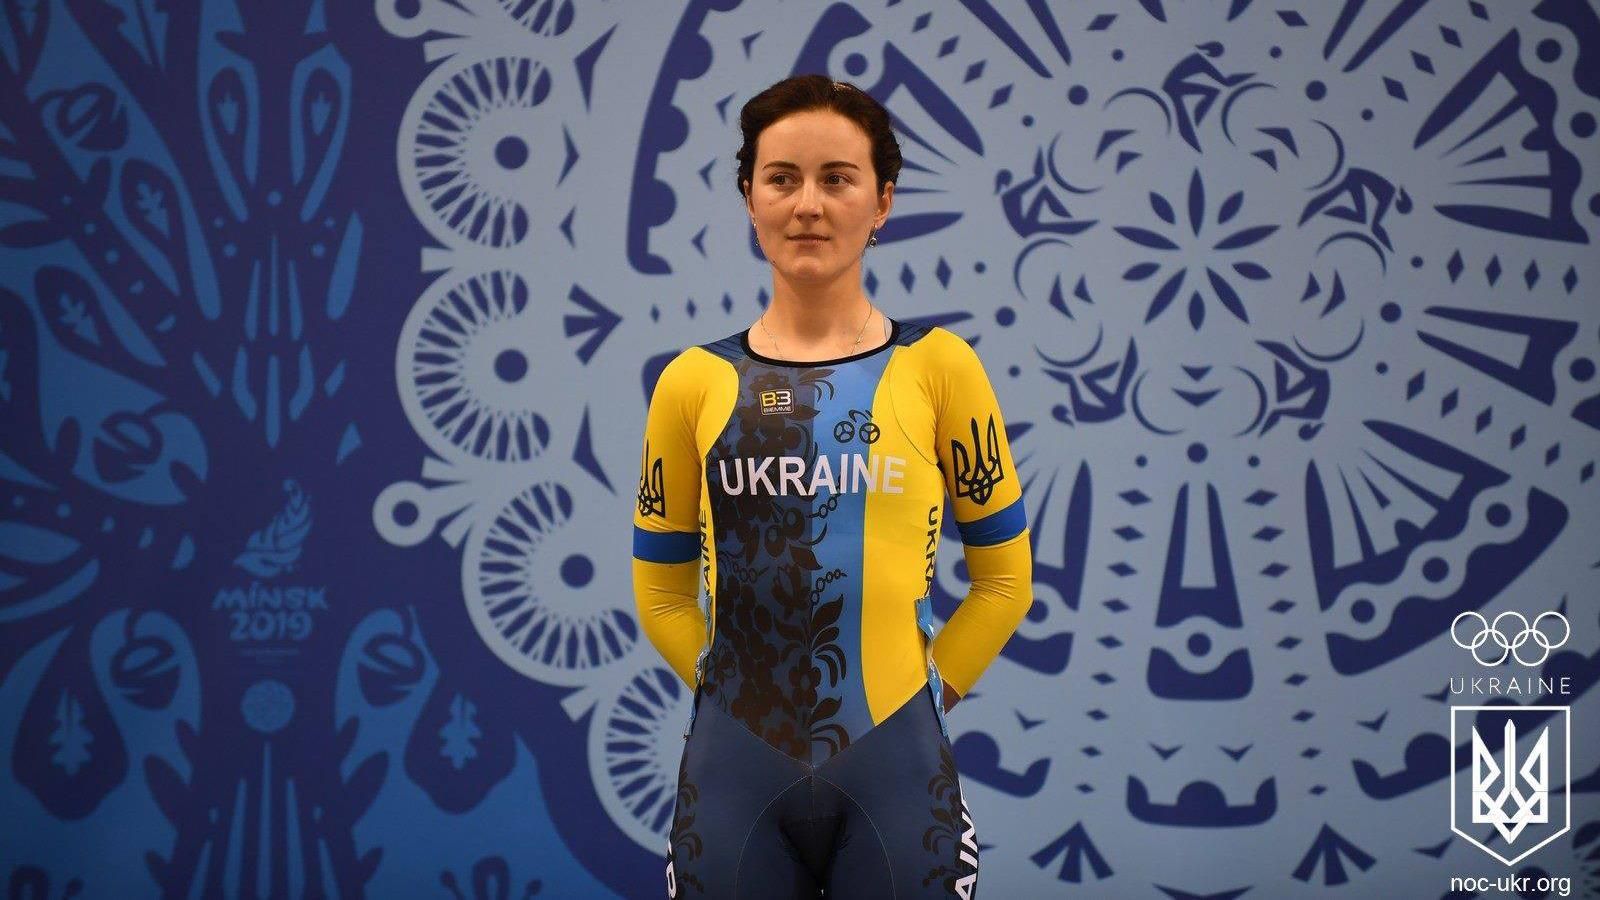 Скандал с велогонщица Соловей: могут ли ее выгнать из сборной Украины